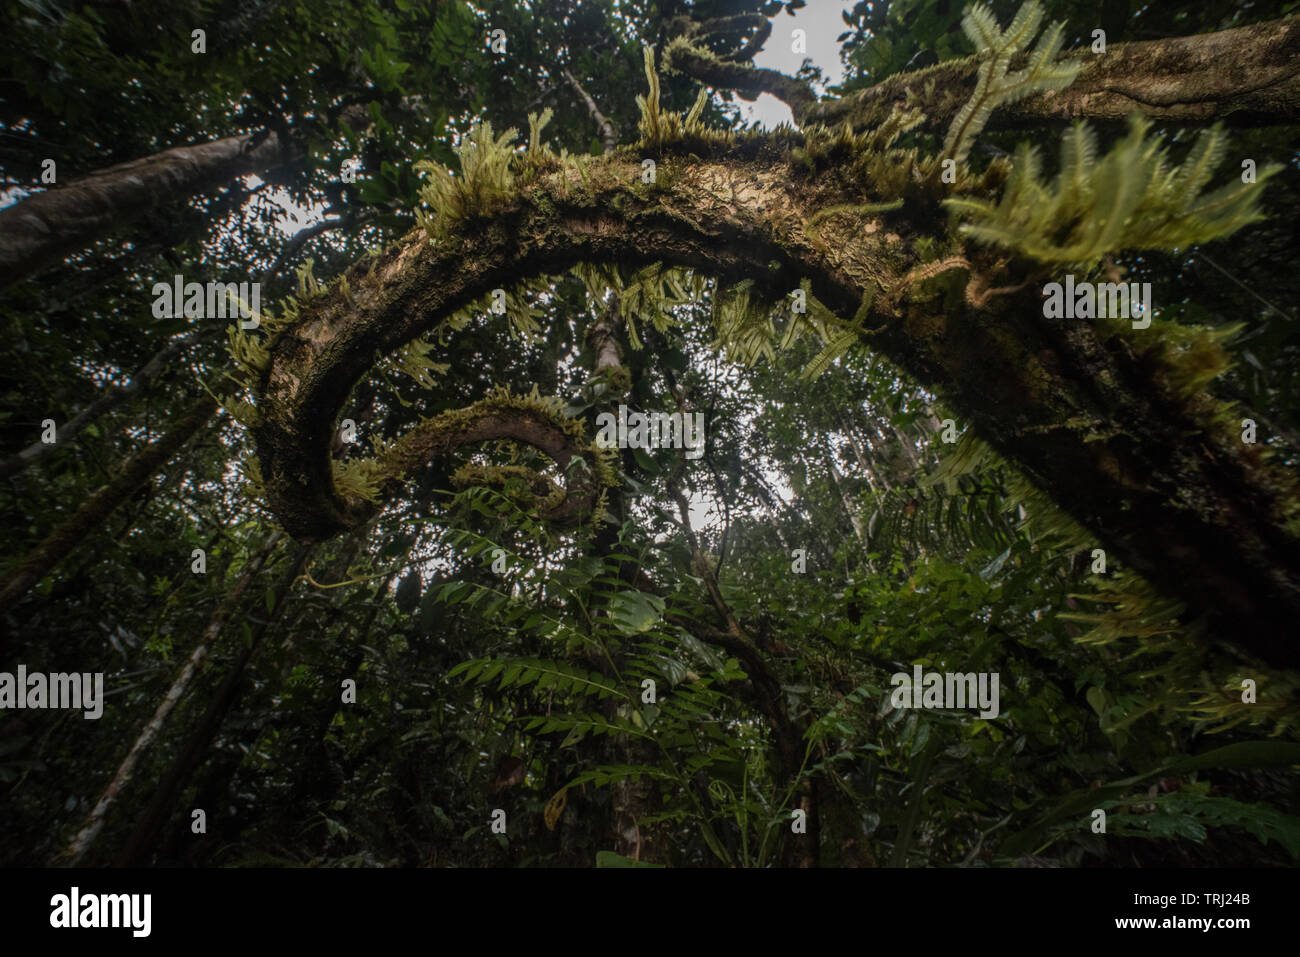 Woody Reben oder lianen Trail nach oben in den Baumkronen in einem tropischen Dschungel, in Ecuador, in Yasuni Nationalpark. Stockfoto